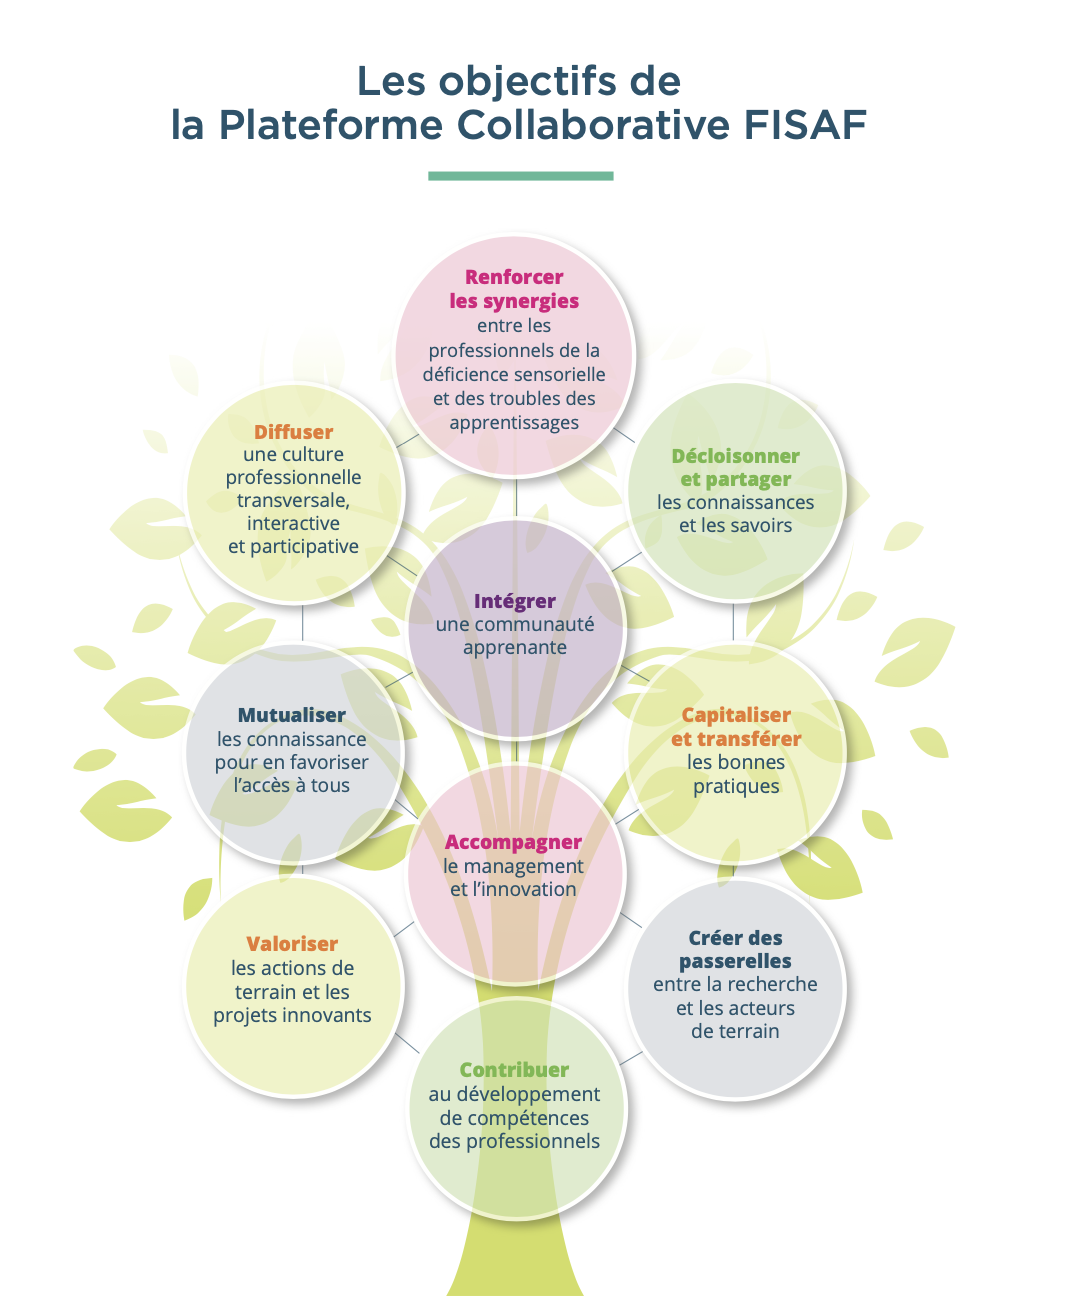 Les objectifs de la Plateforme Collaborative FISAF